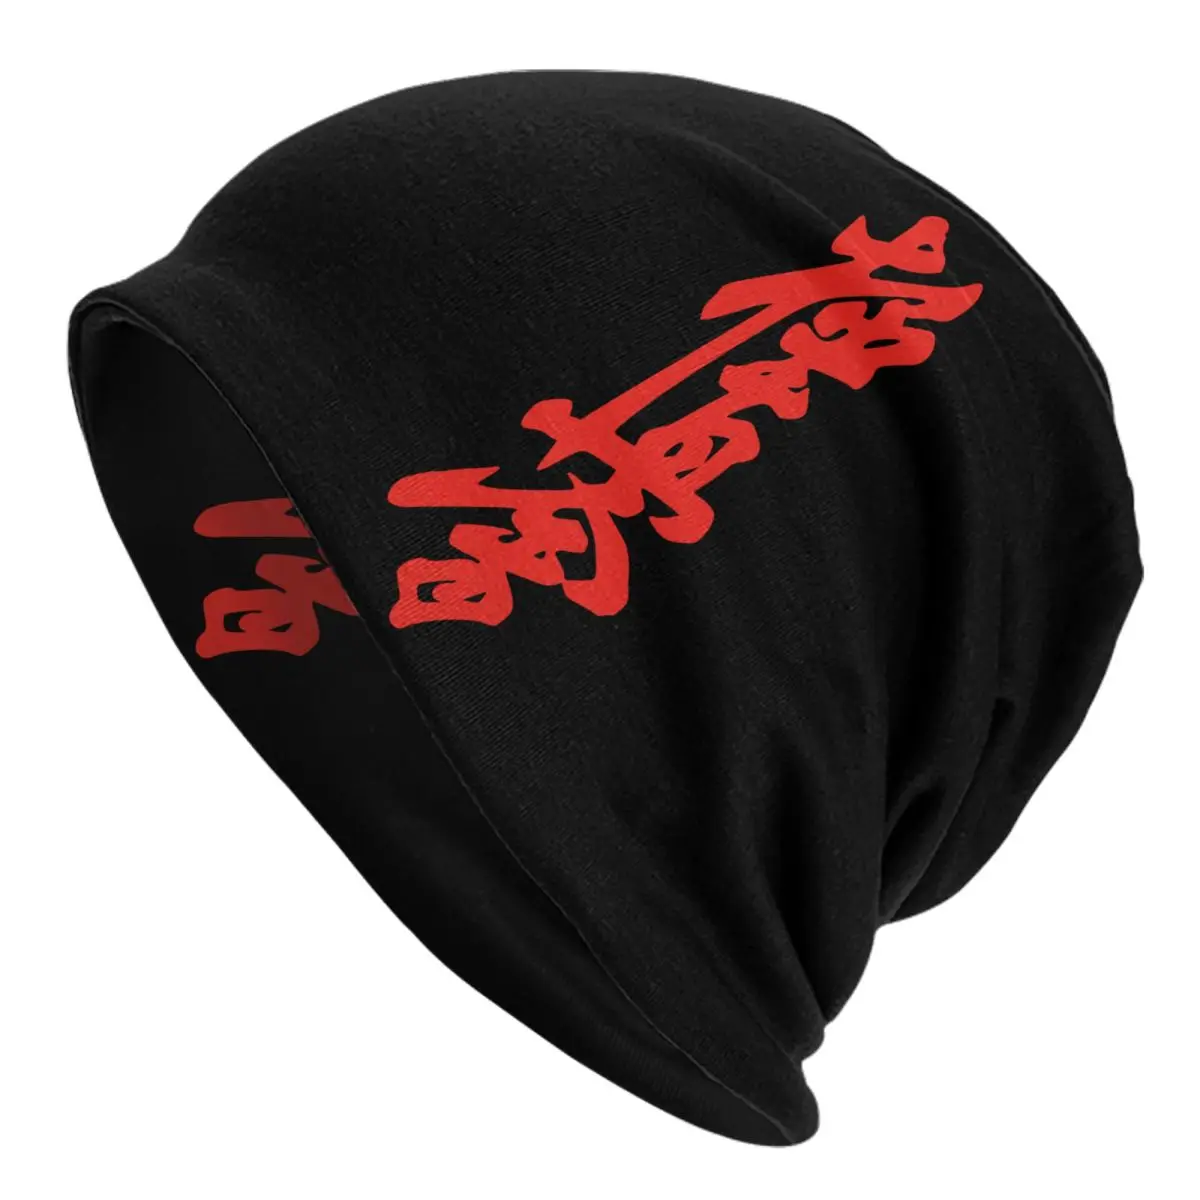 

Шапка Kyokushi вязаная унисекс, теплая зимняя шапка для каратэ, боевых искусств, для мужчин и женщин